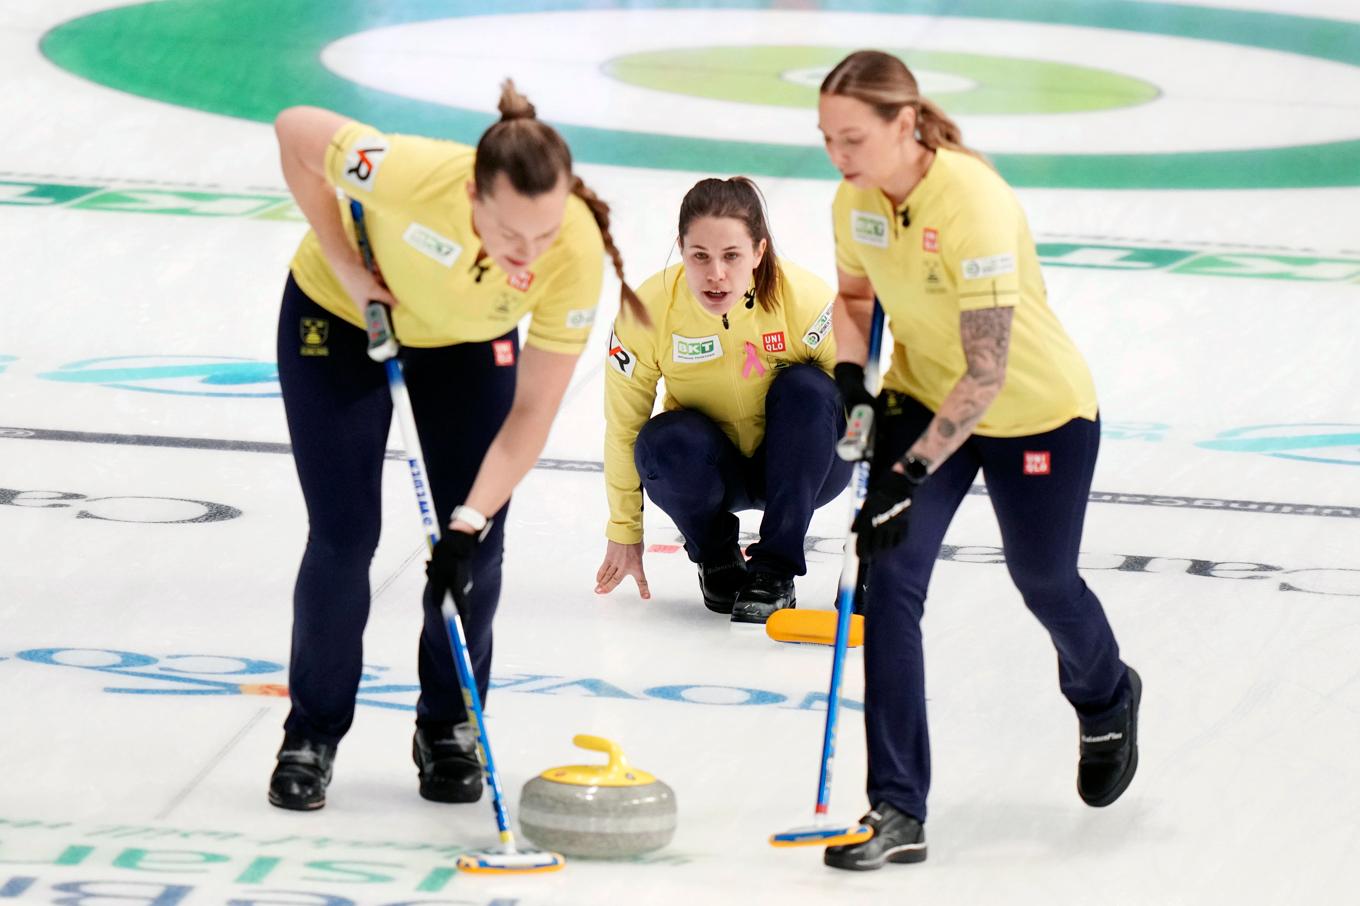 Svenska skippern Anna Hasselborg (i mitten) och Agnes Knochenhauer (till vänster) och Sofia Mabergs (till höger) under matchen mot USA. Sedan blev det förlust mot Sydkorea men slutspelshoppet lever i curling-vm för damer i Kanada, för Sverige. Foto: Darren Calabrese/AP/TT